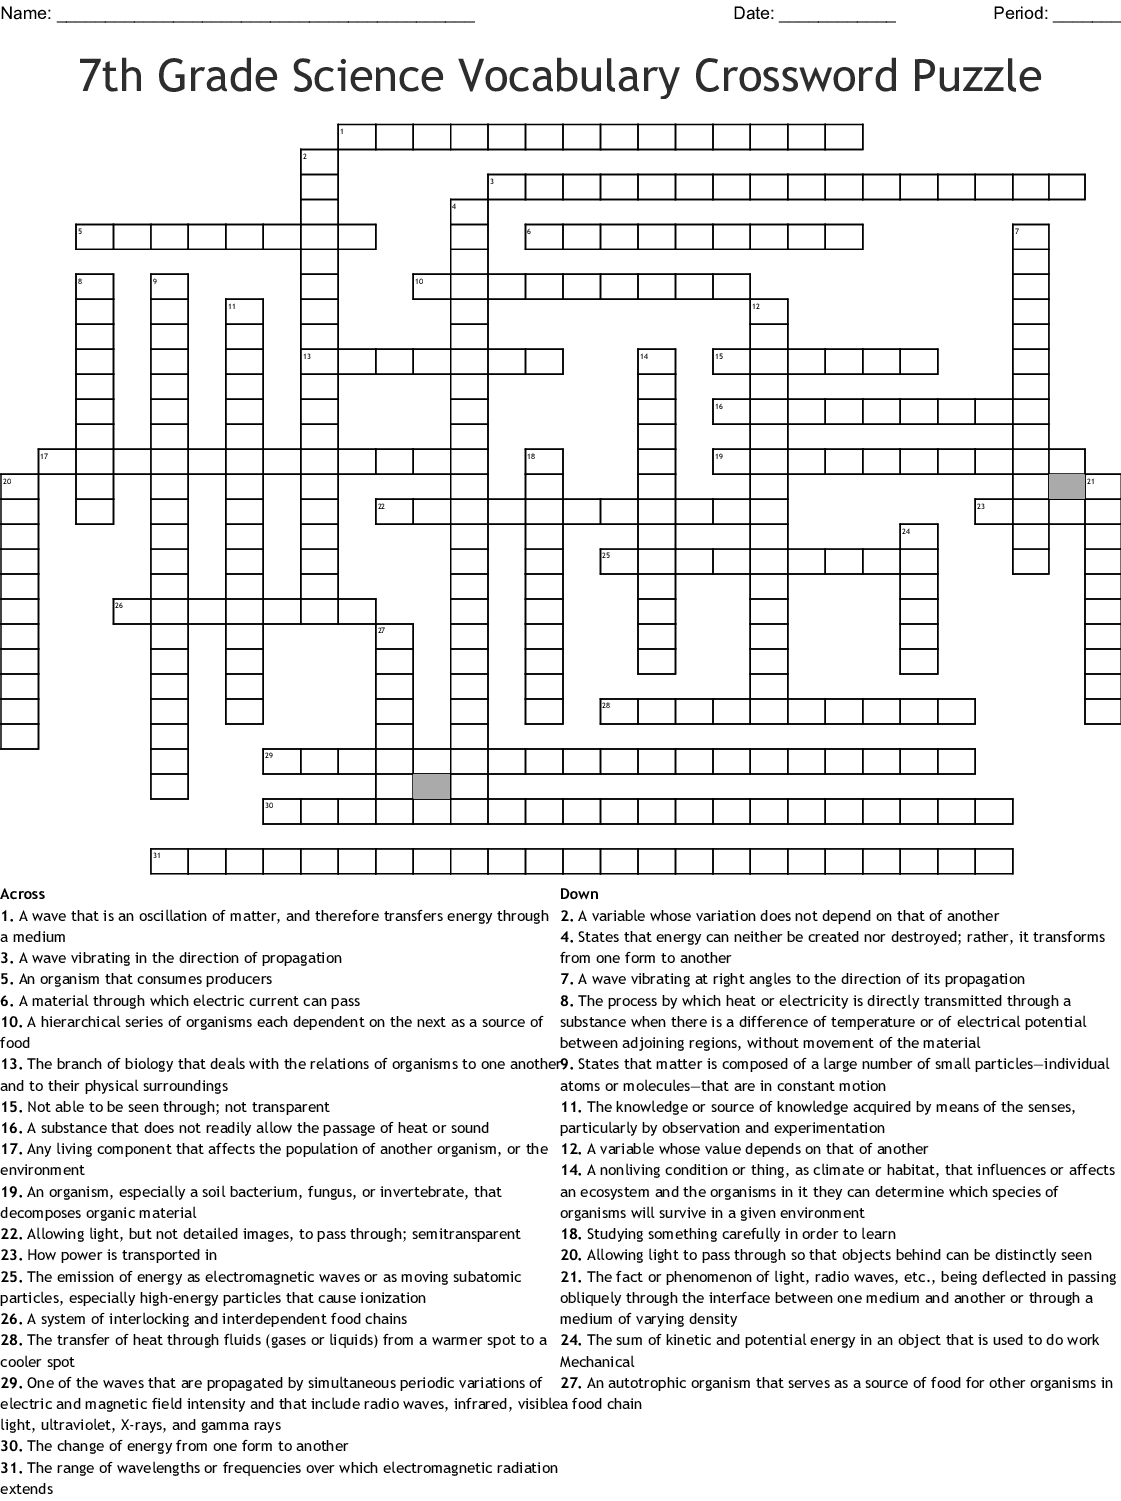 Volcano Crossword Puzzle Printable